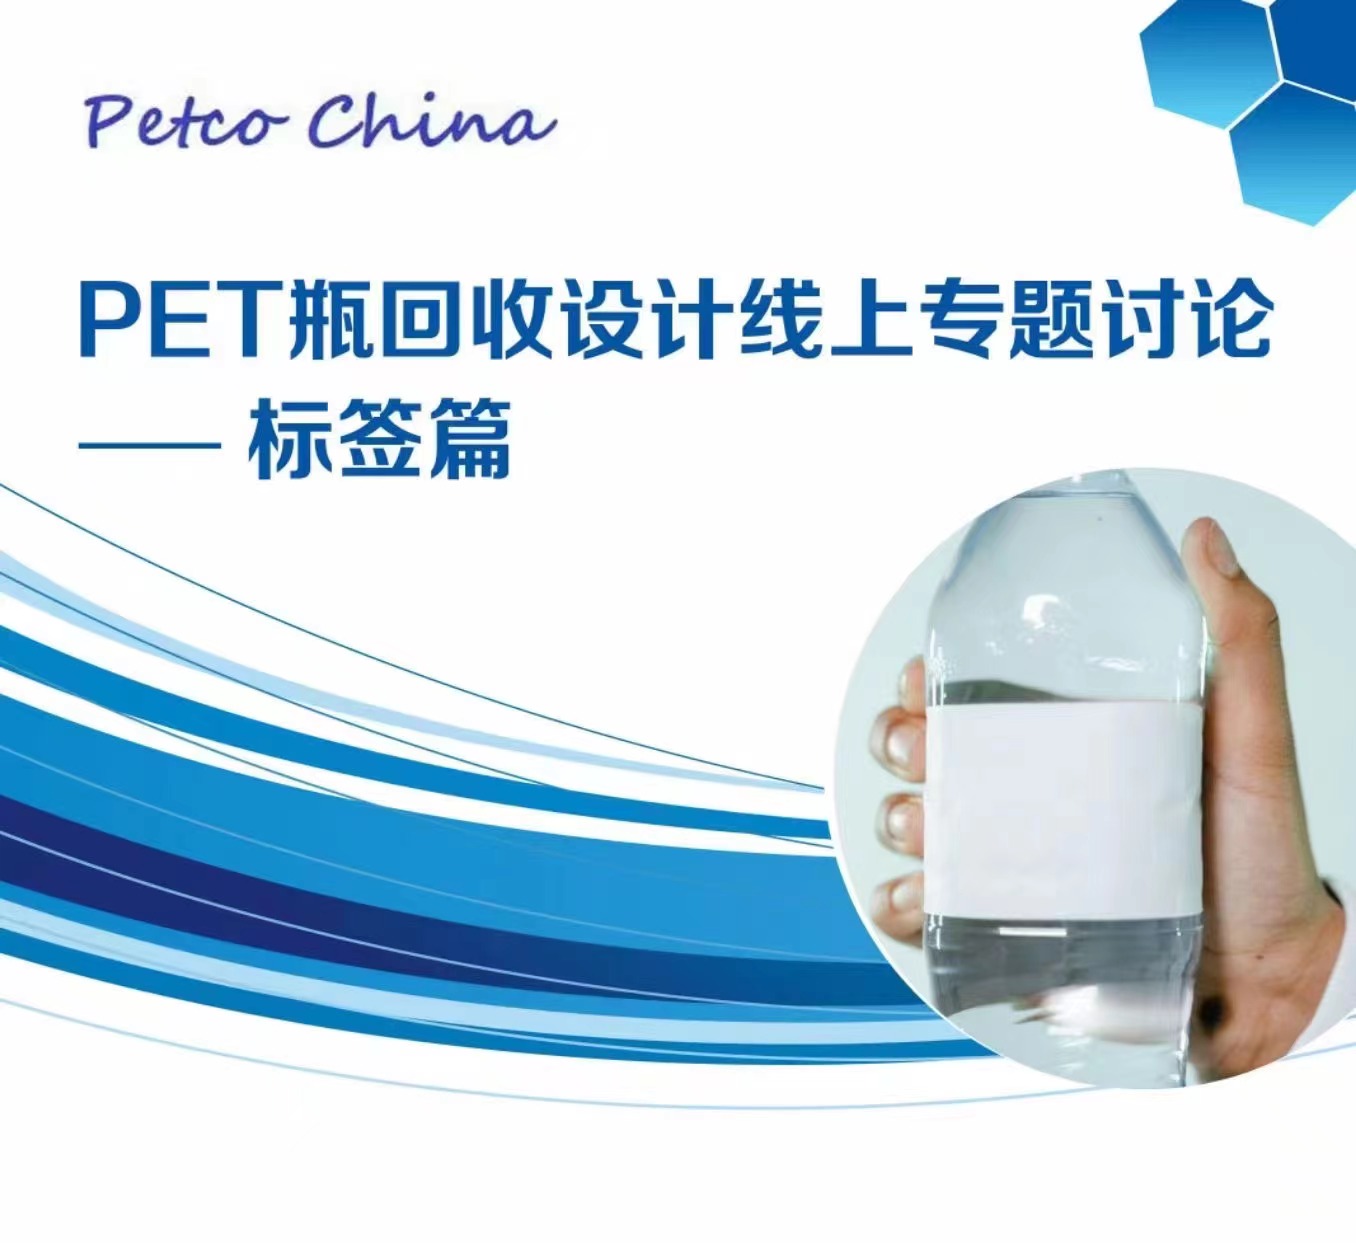 PET瓶回收设计-标签篇线上专题讨论圆满结束！盈拓总裁刘宇鹏先生与各位专业人士展开热烈讨论！